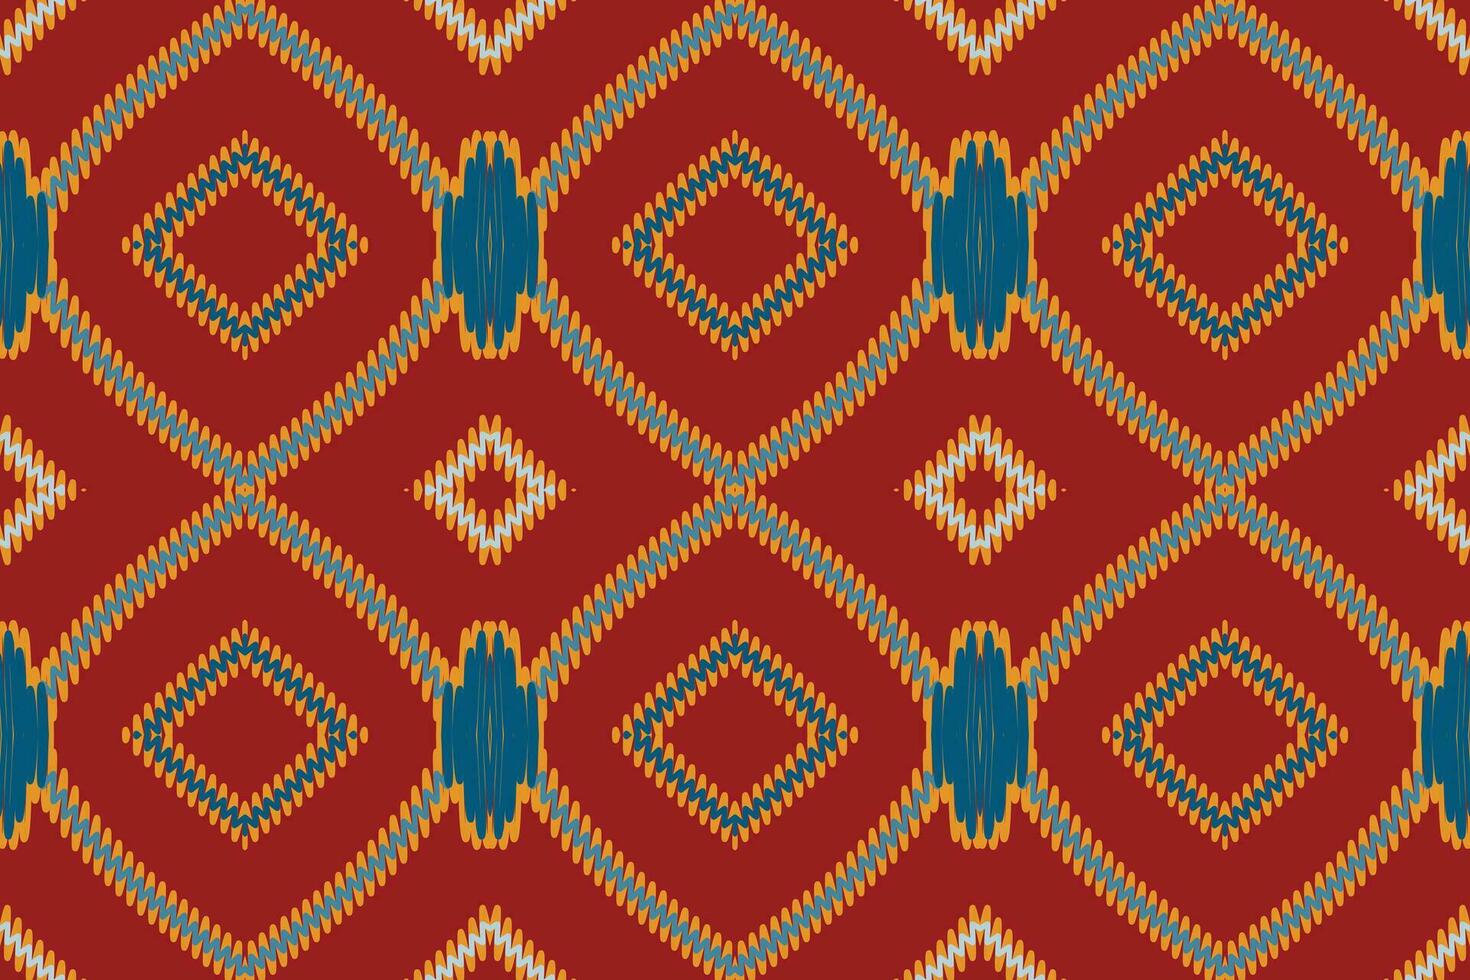 Seide Stoff Patola Sari Muster nahtlos skandinavisch Muster Motiv Stickerei, Ikat Stickerei Vektor Design zum drucken ägyptisch Hieroglyphen tibetanisch geo Muster